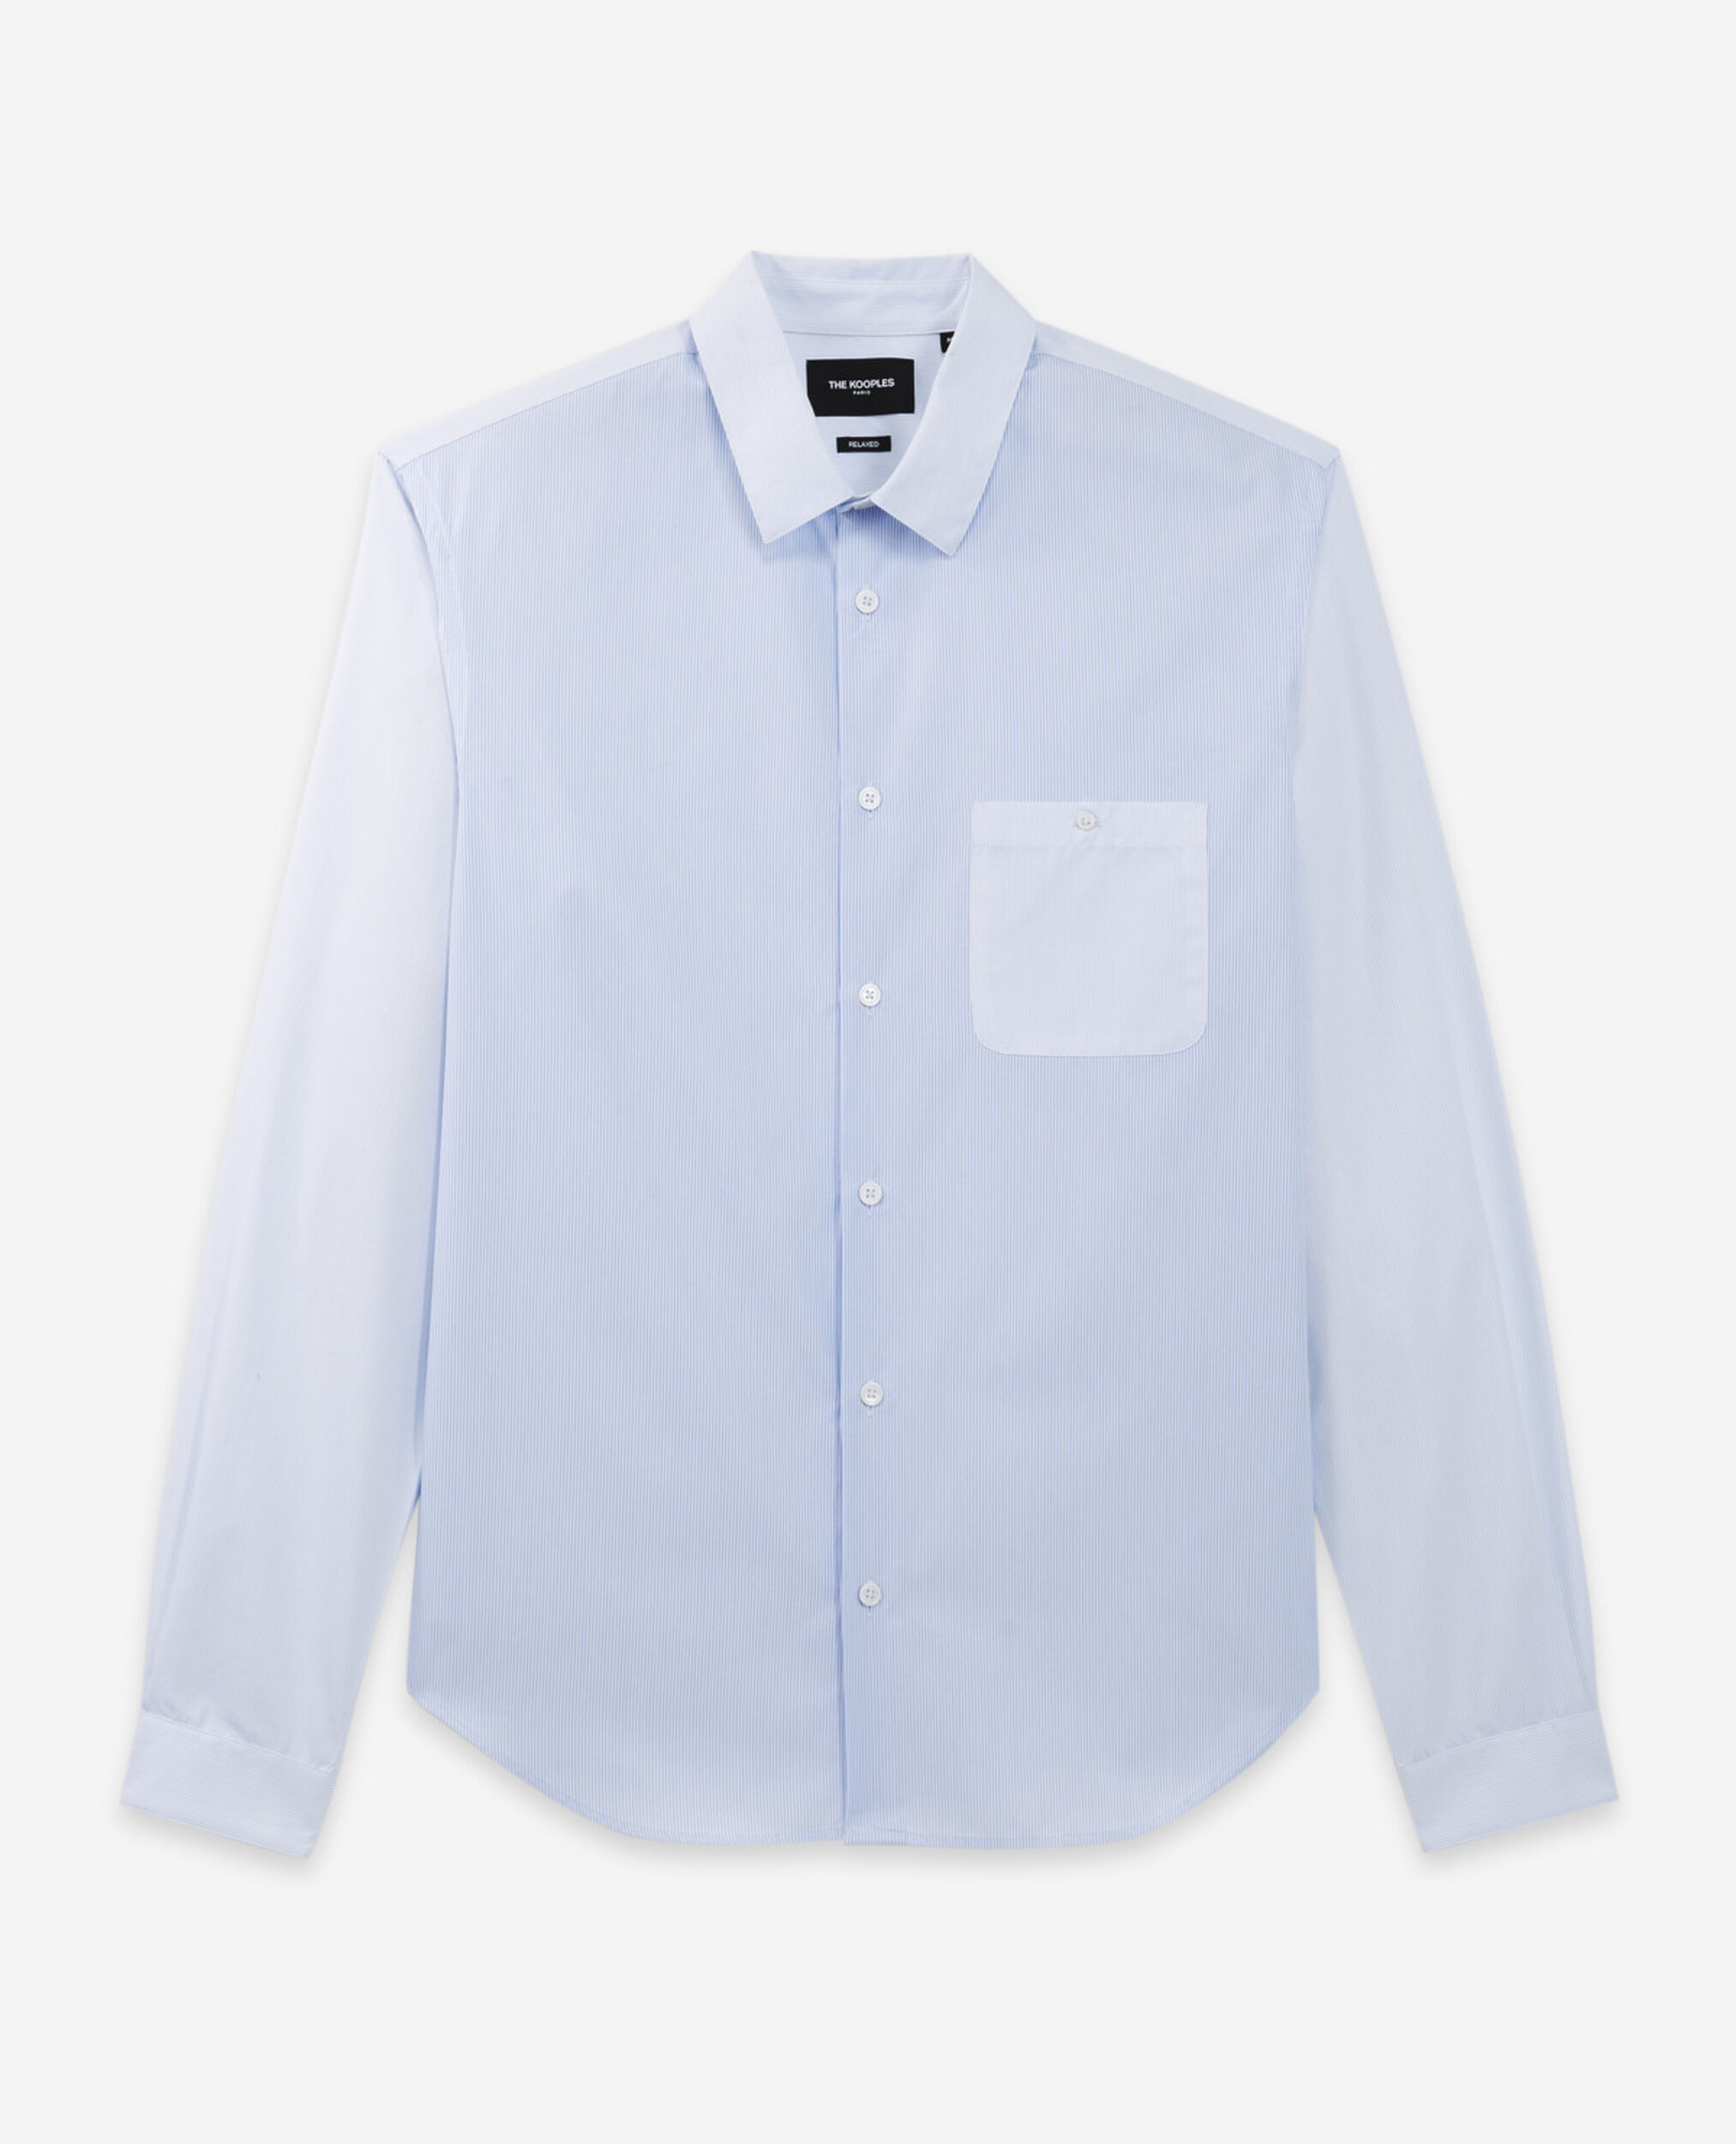 Camisa azul cielo de rayas con cuello blanco, WHITE / SKY BLUE, hi-res image number null